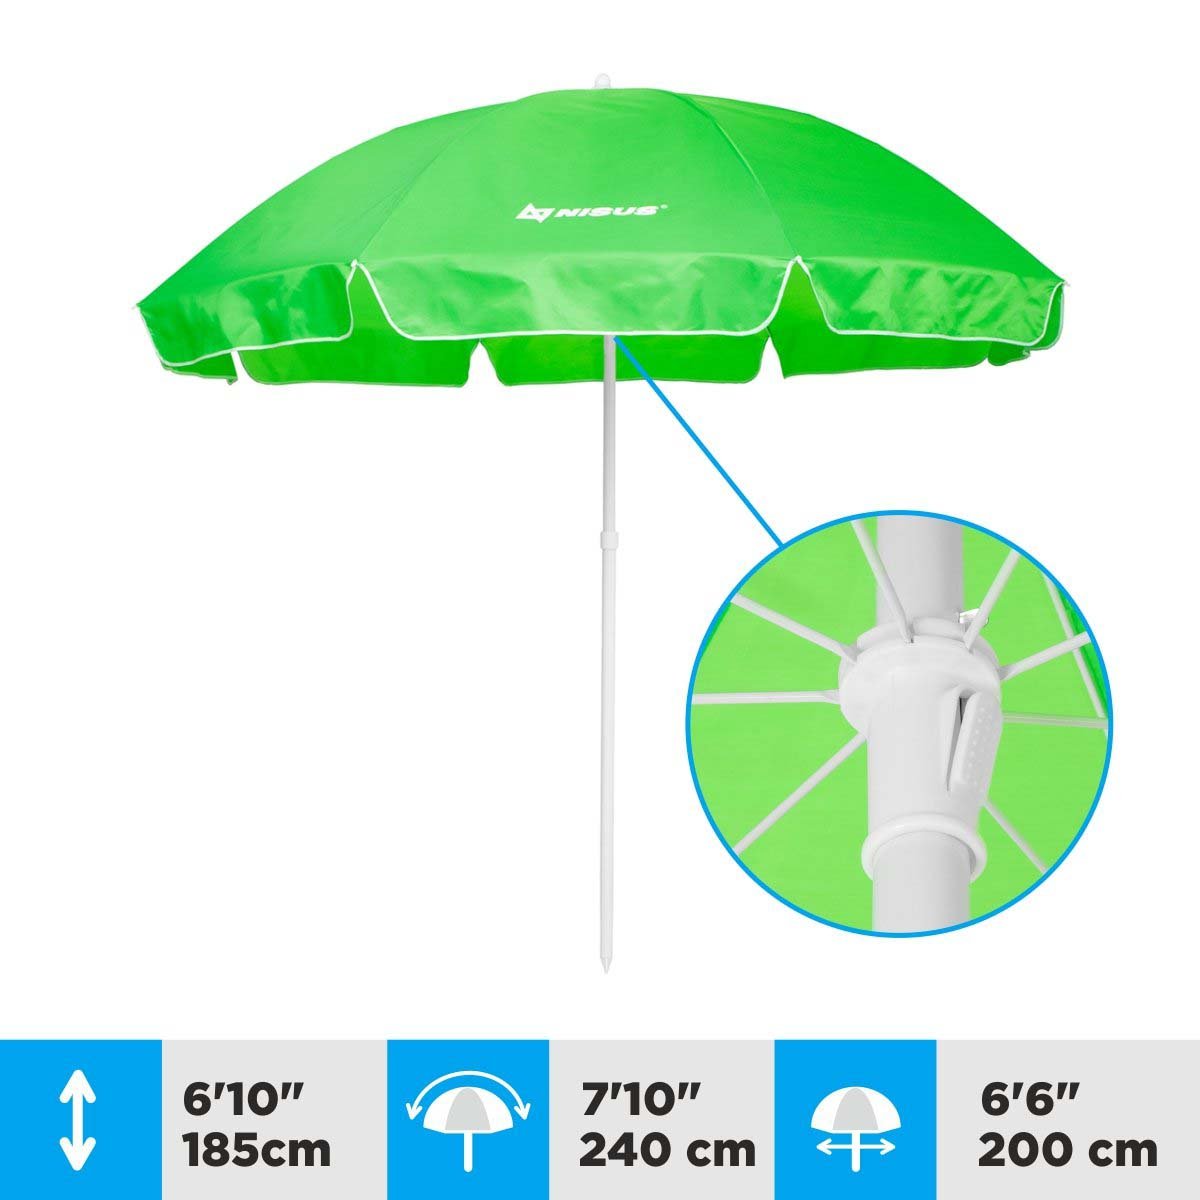 A 6.6 ft Green Tilting Beach Umbrella is 6.1 feet high